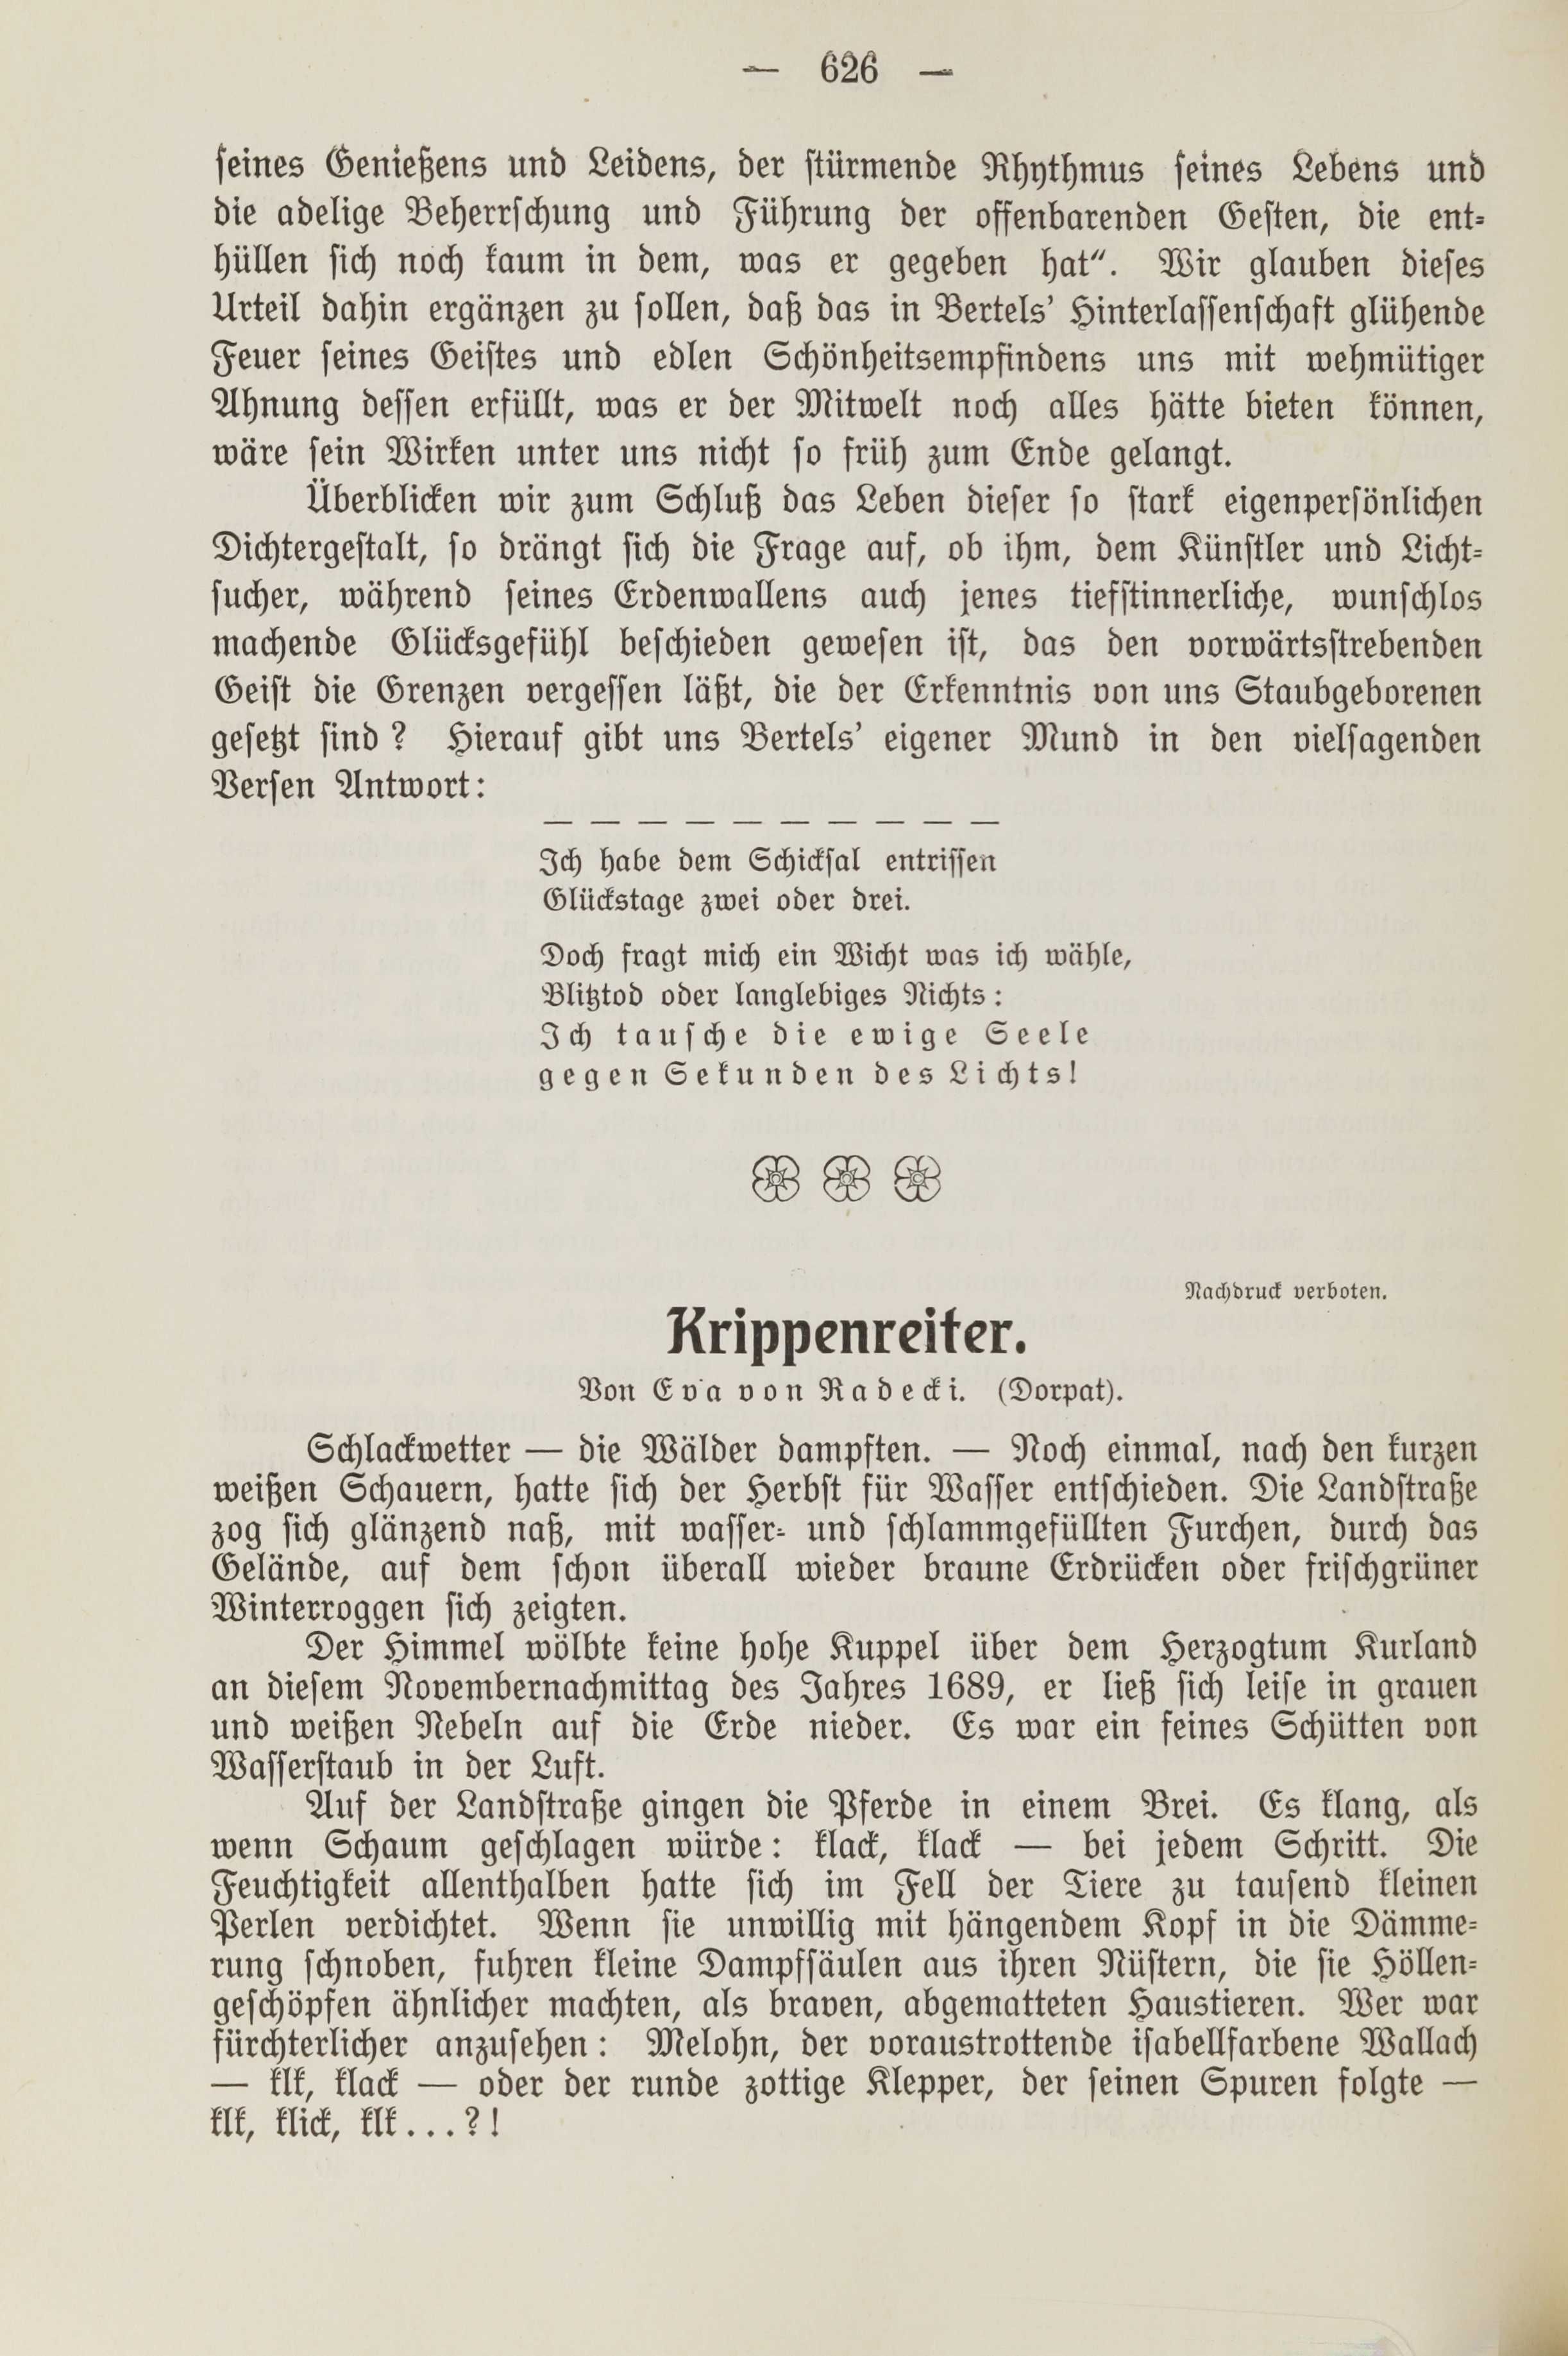 Krippenreiter [1] (1913) | 1. (626) Haupttext